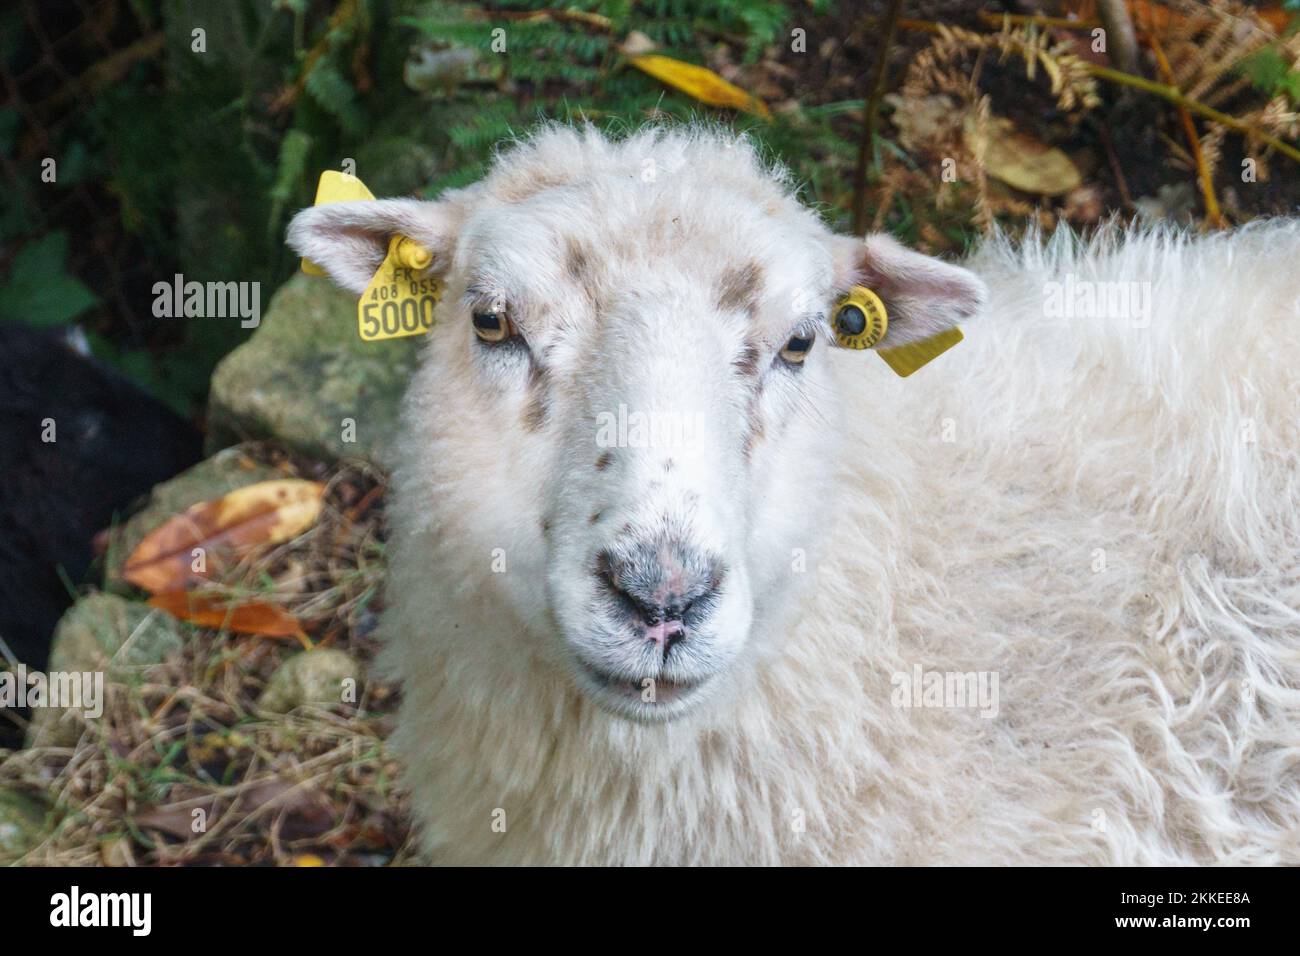 Una pecora bianca con il volto con segni auricolari gialli guardando la macchina fotografica Foto Stock